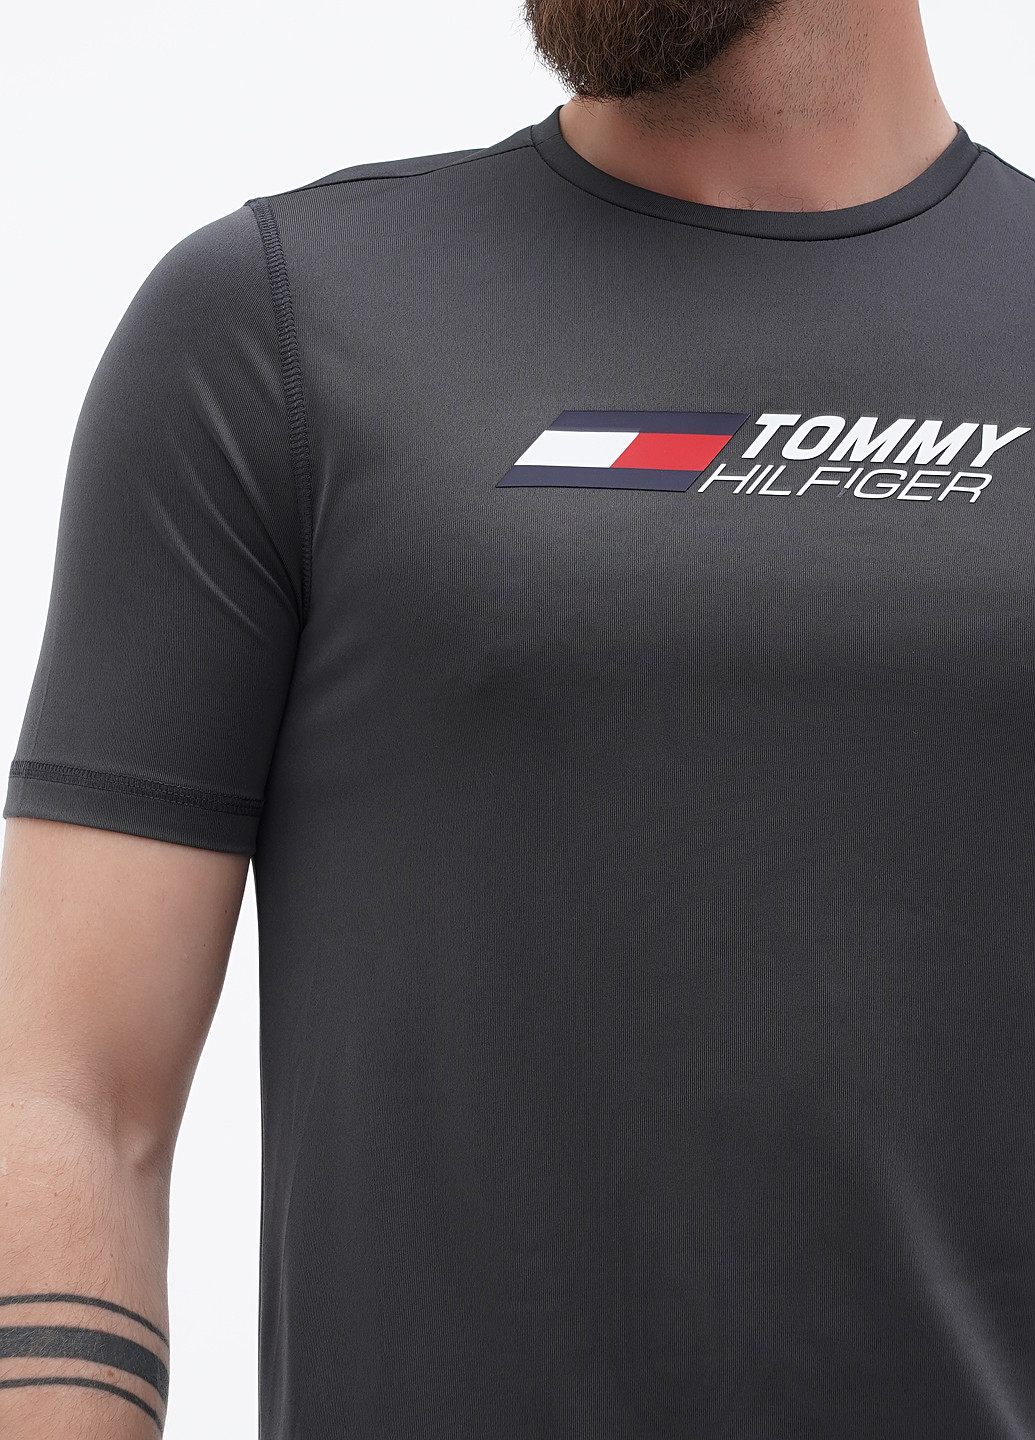 Графитовая футболка Tommy Hilfiger